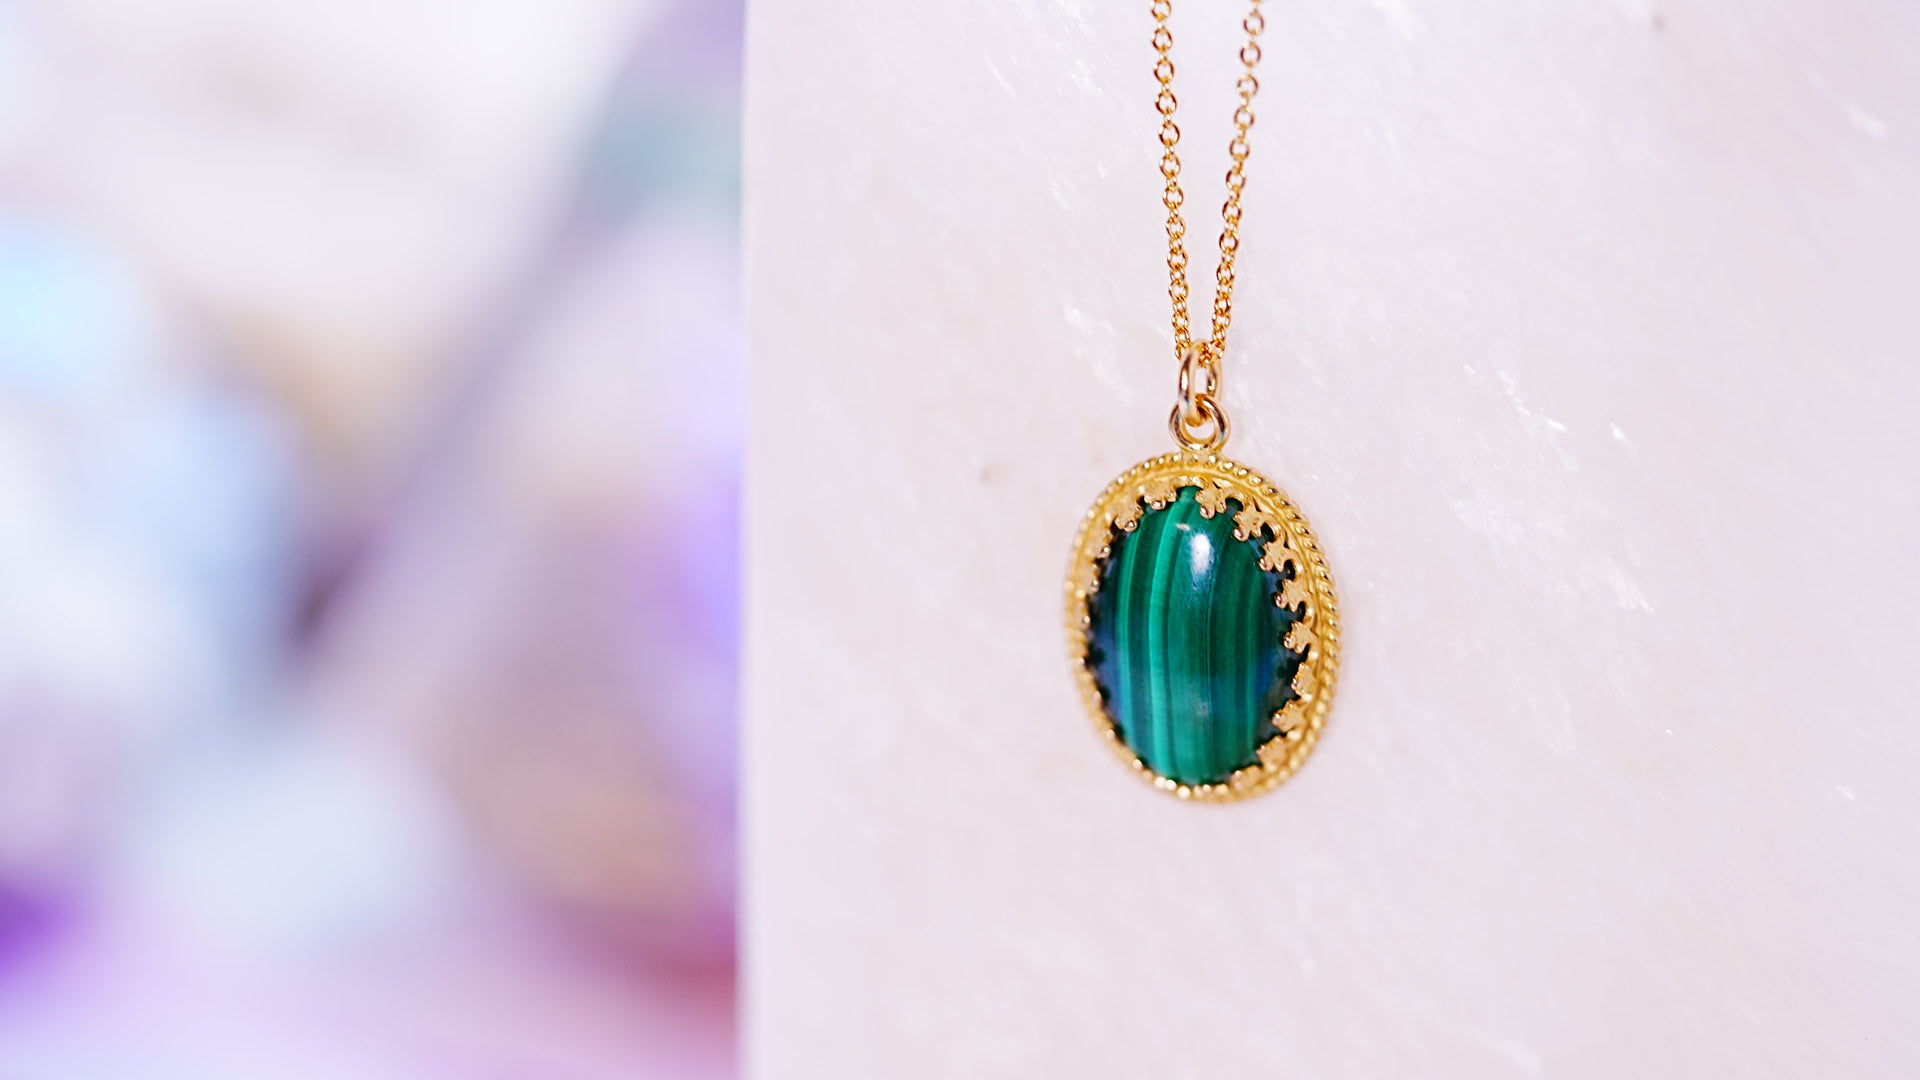 グリーンマラカイト オーバルXLオードリーネックレス【Malachite green/Oval XL Audrey necklace】 –  Juvelia